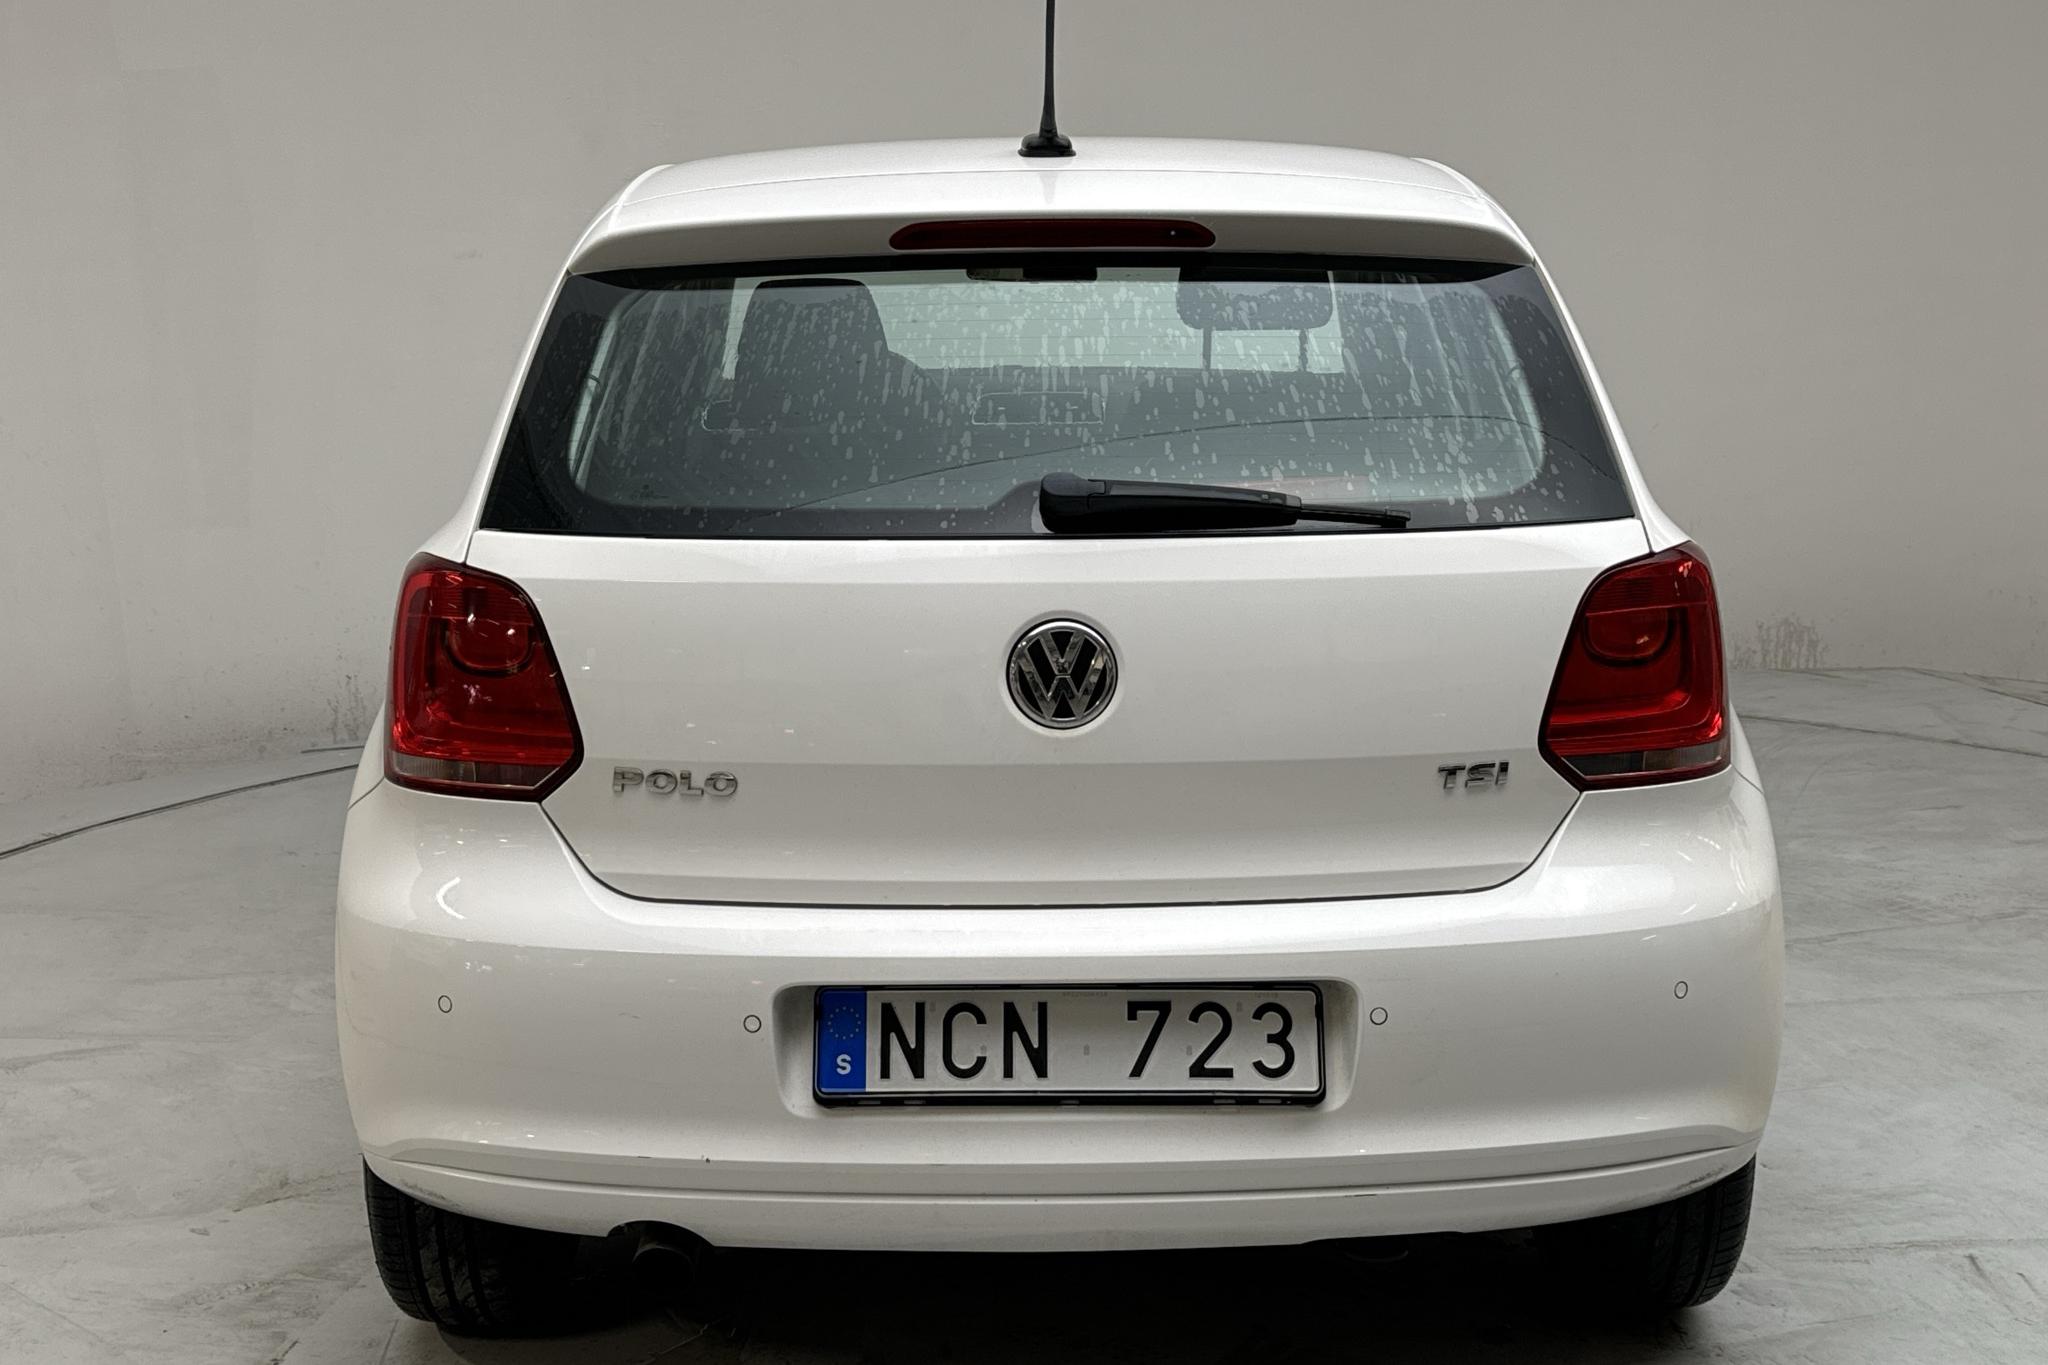 VW Polo 1.2 TSI 5dr (90hk) - 142 270 km - Manualna - biały - 2013